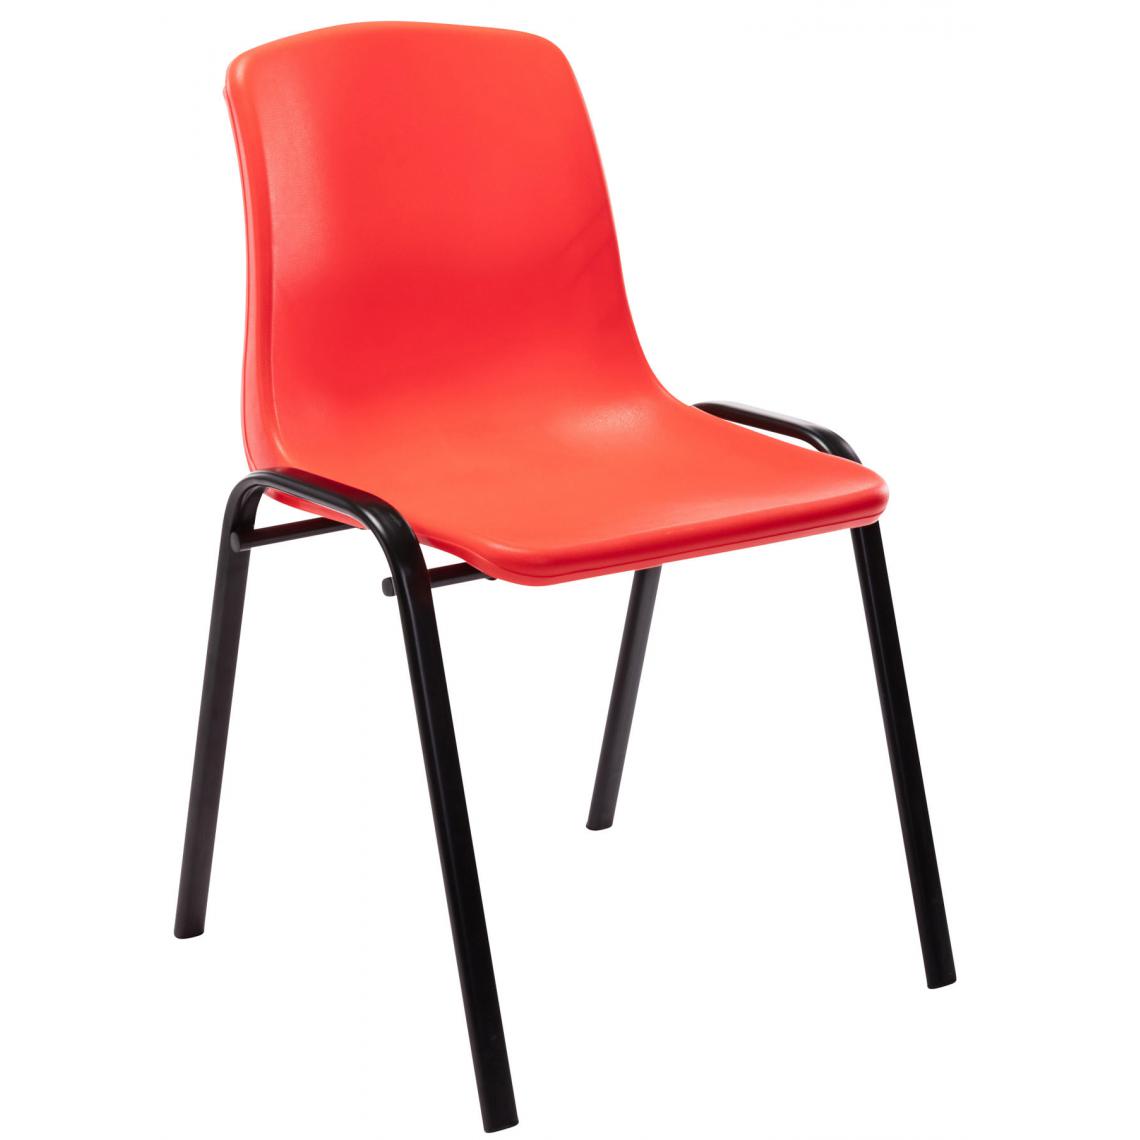 Icaverne - Magnifique Chaise empilable serie Lisbonne en plastique couleur rouge - Chaises